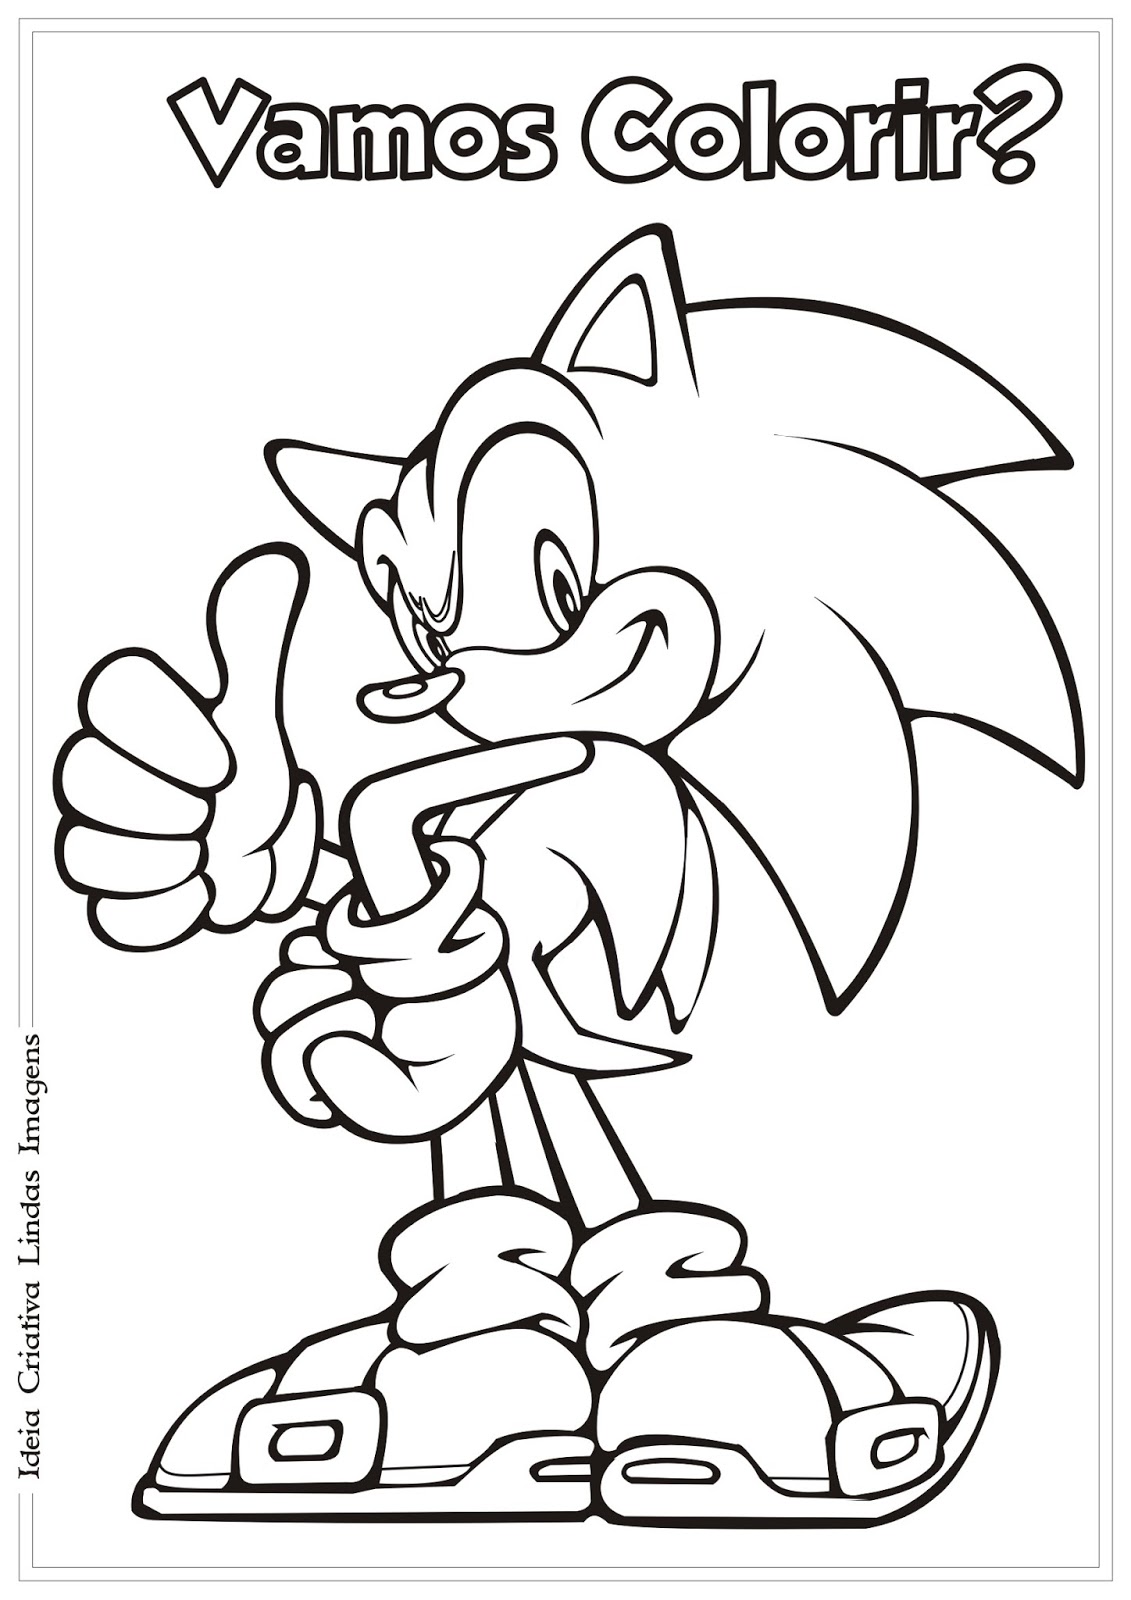 Desenhos de Sonic para colorir, jogos de pintar e imprimir